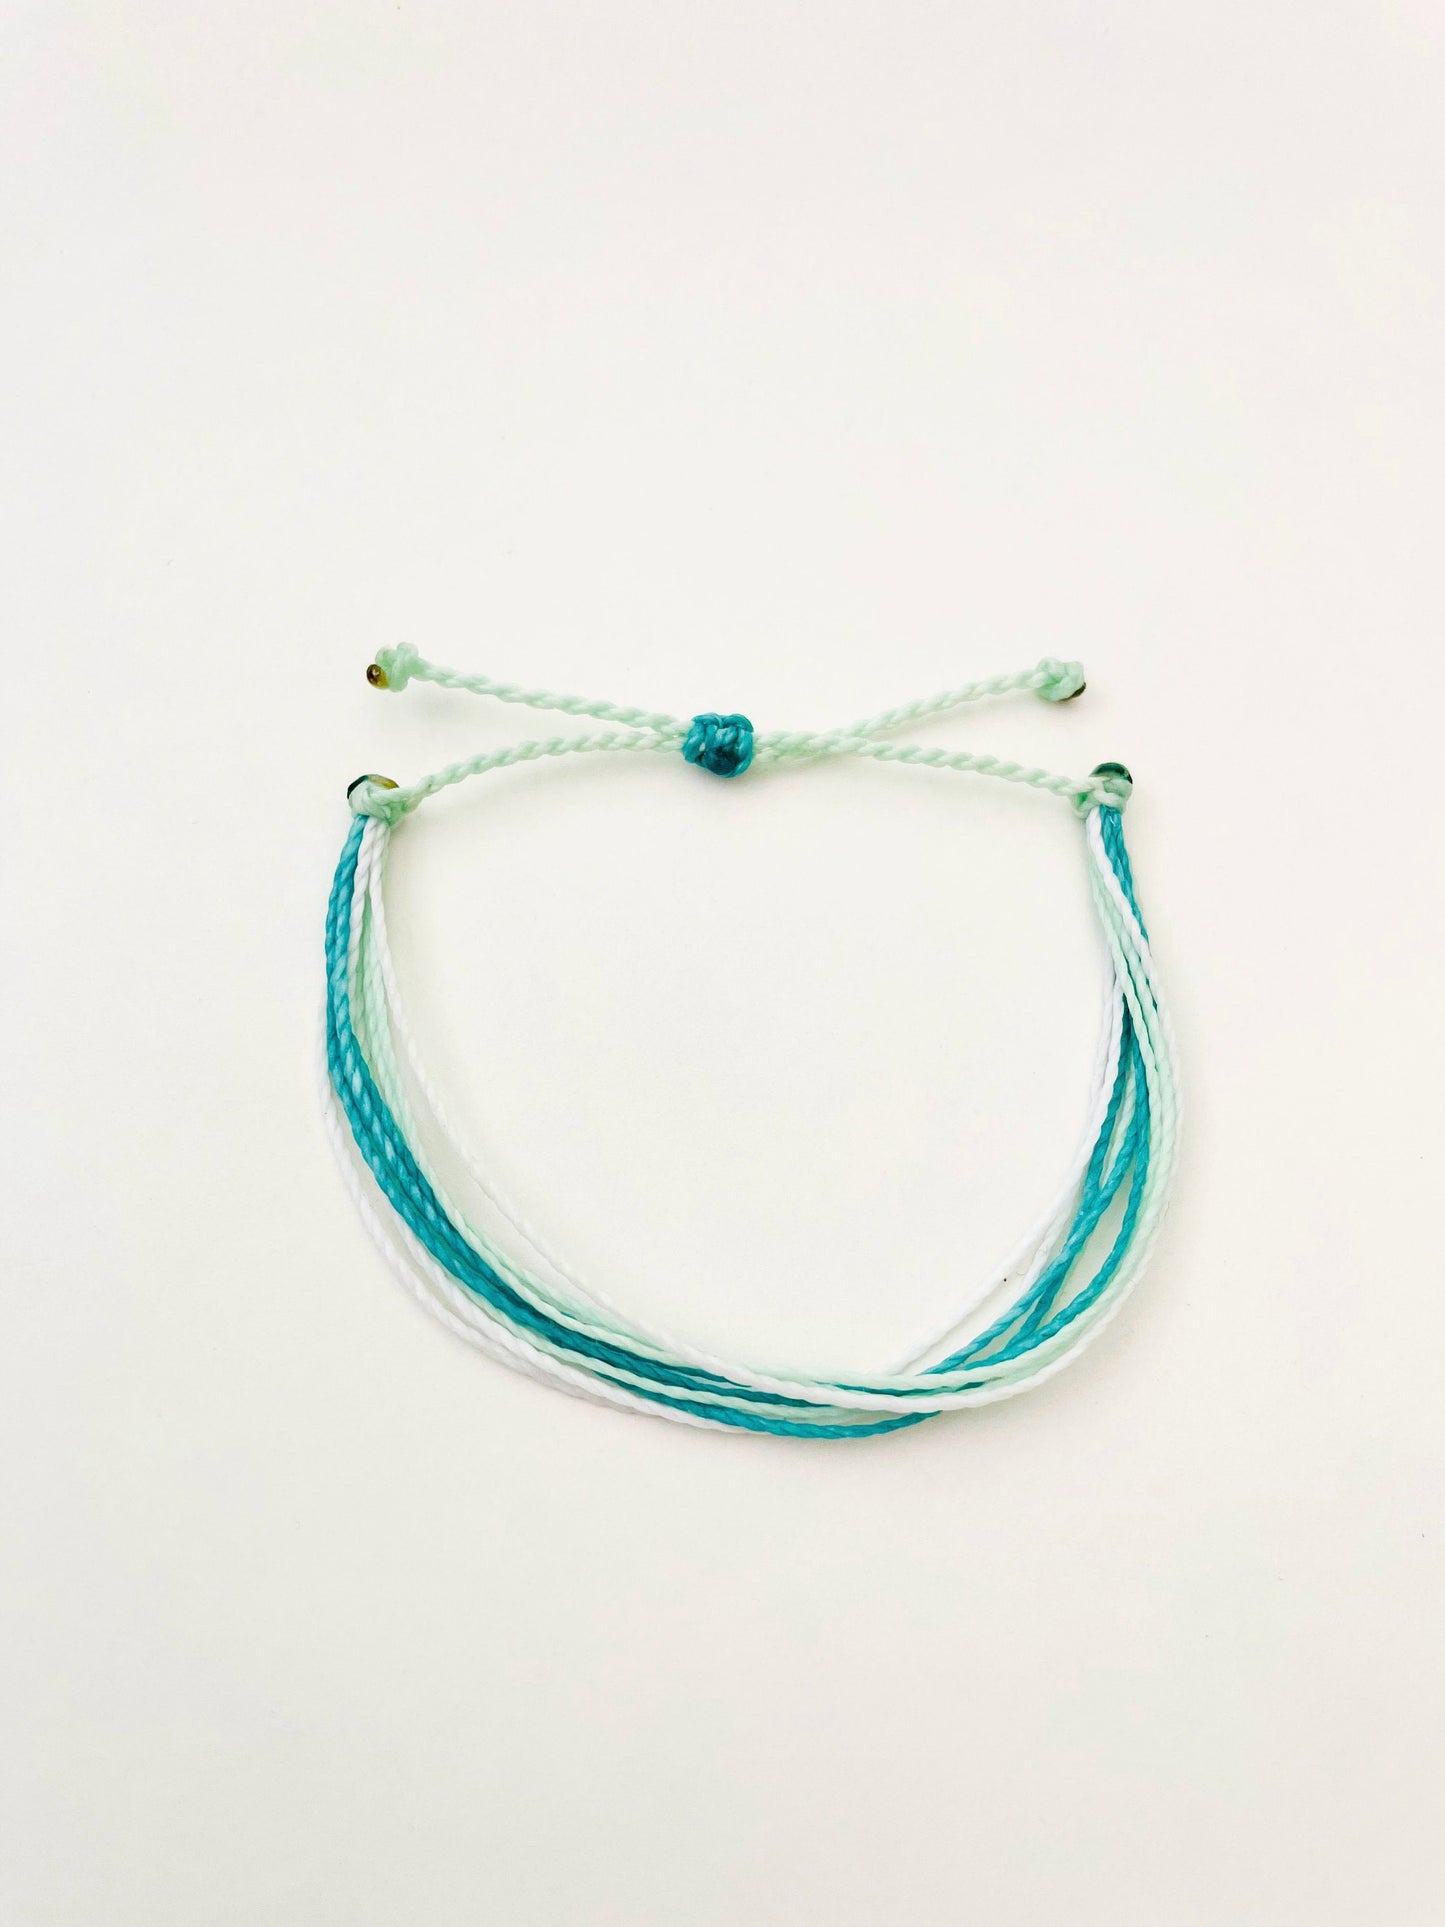 Beachy Bracelet, String Bracelet, Surfer Bracelet, Handmade Bracelet, Bracelet for Women